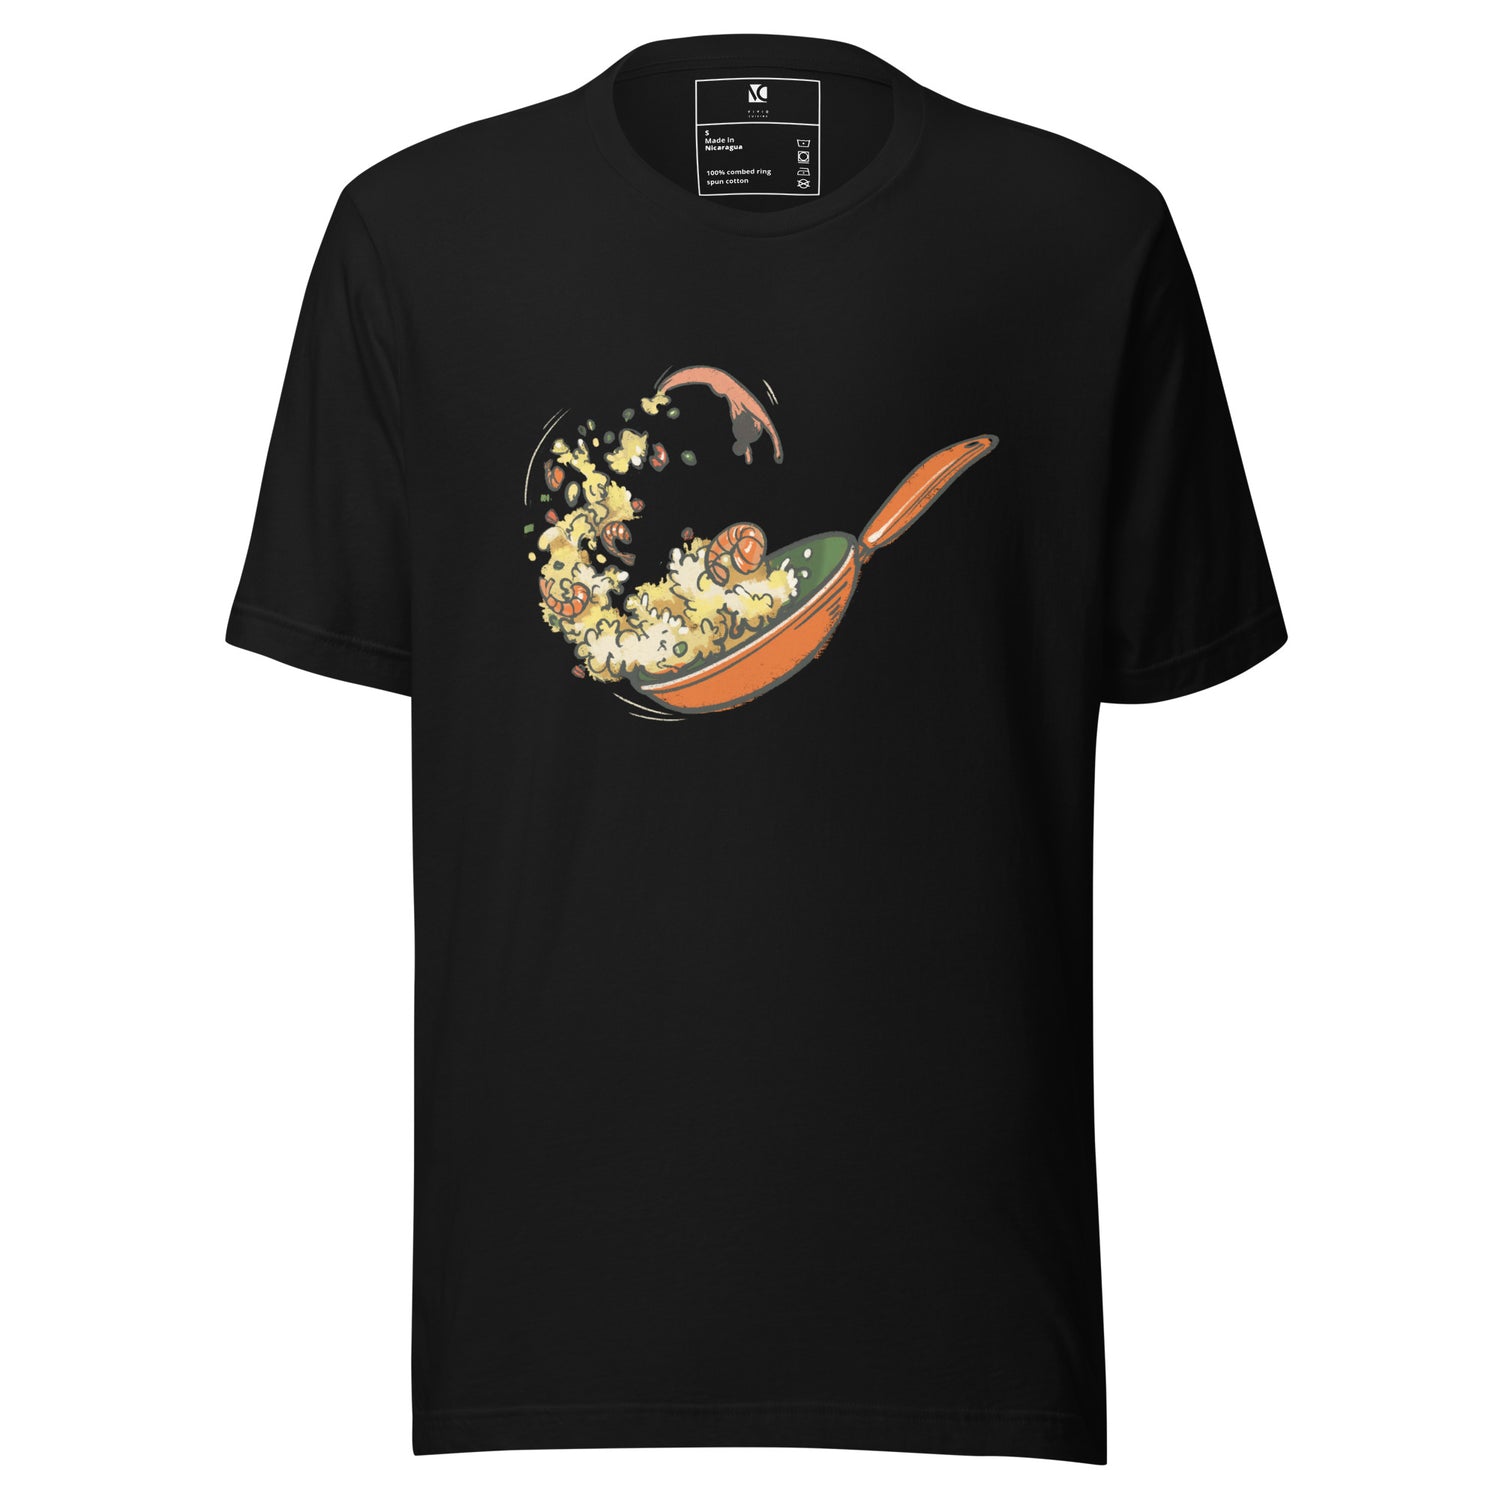 An Eggy Backflip - Unisex T-Shirt